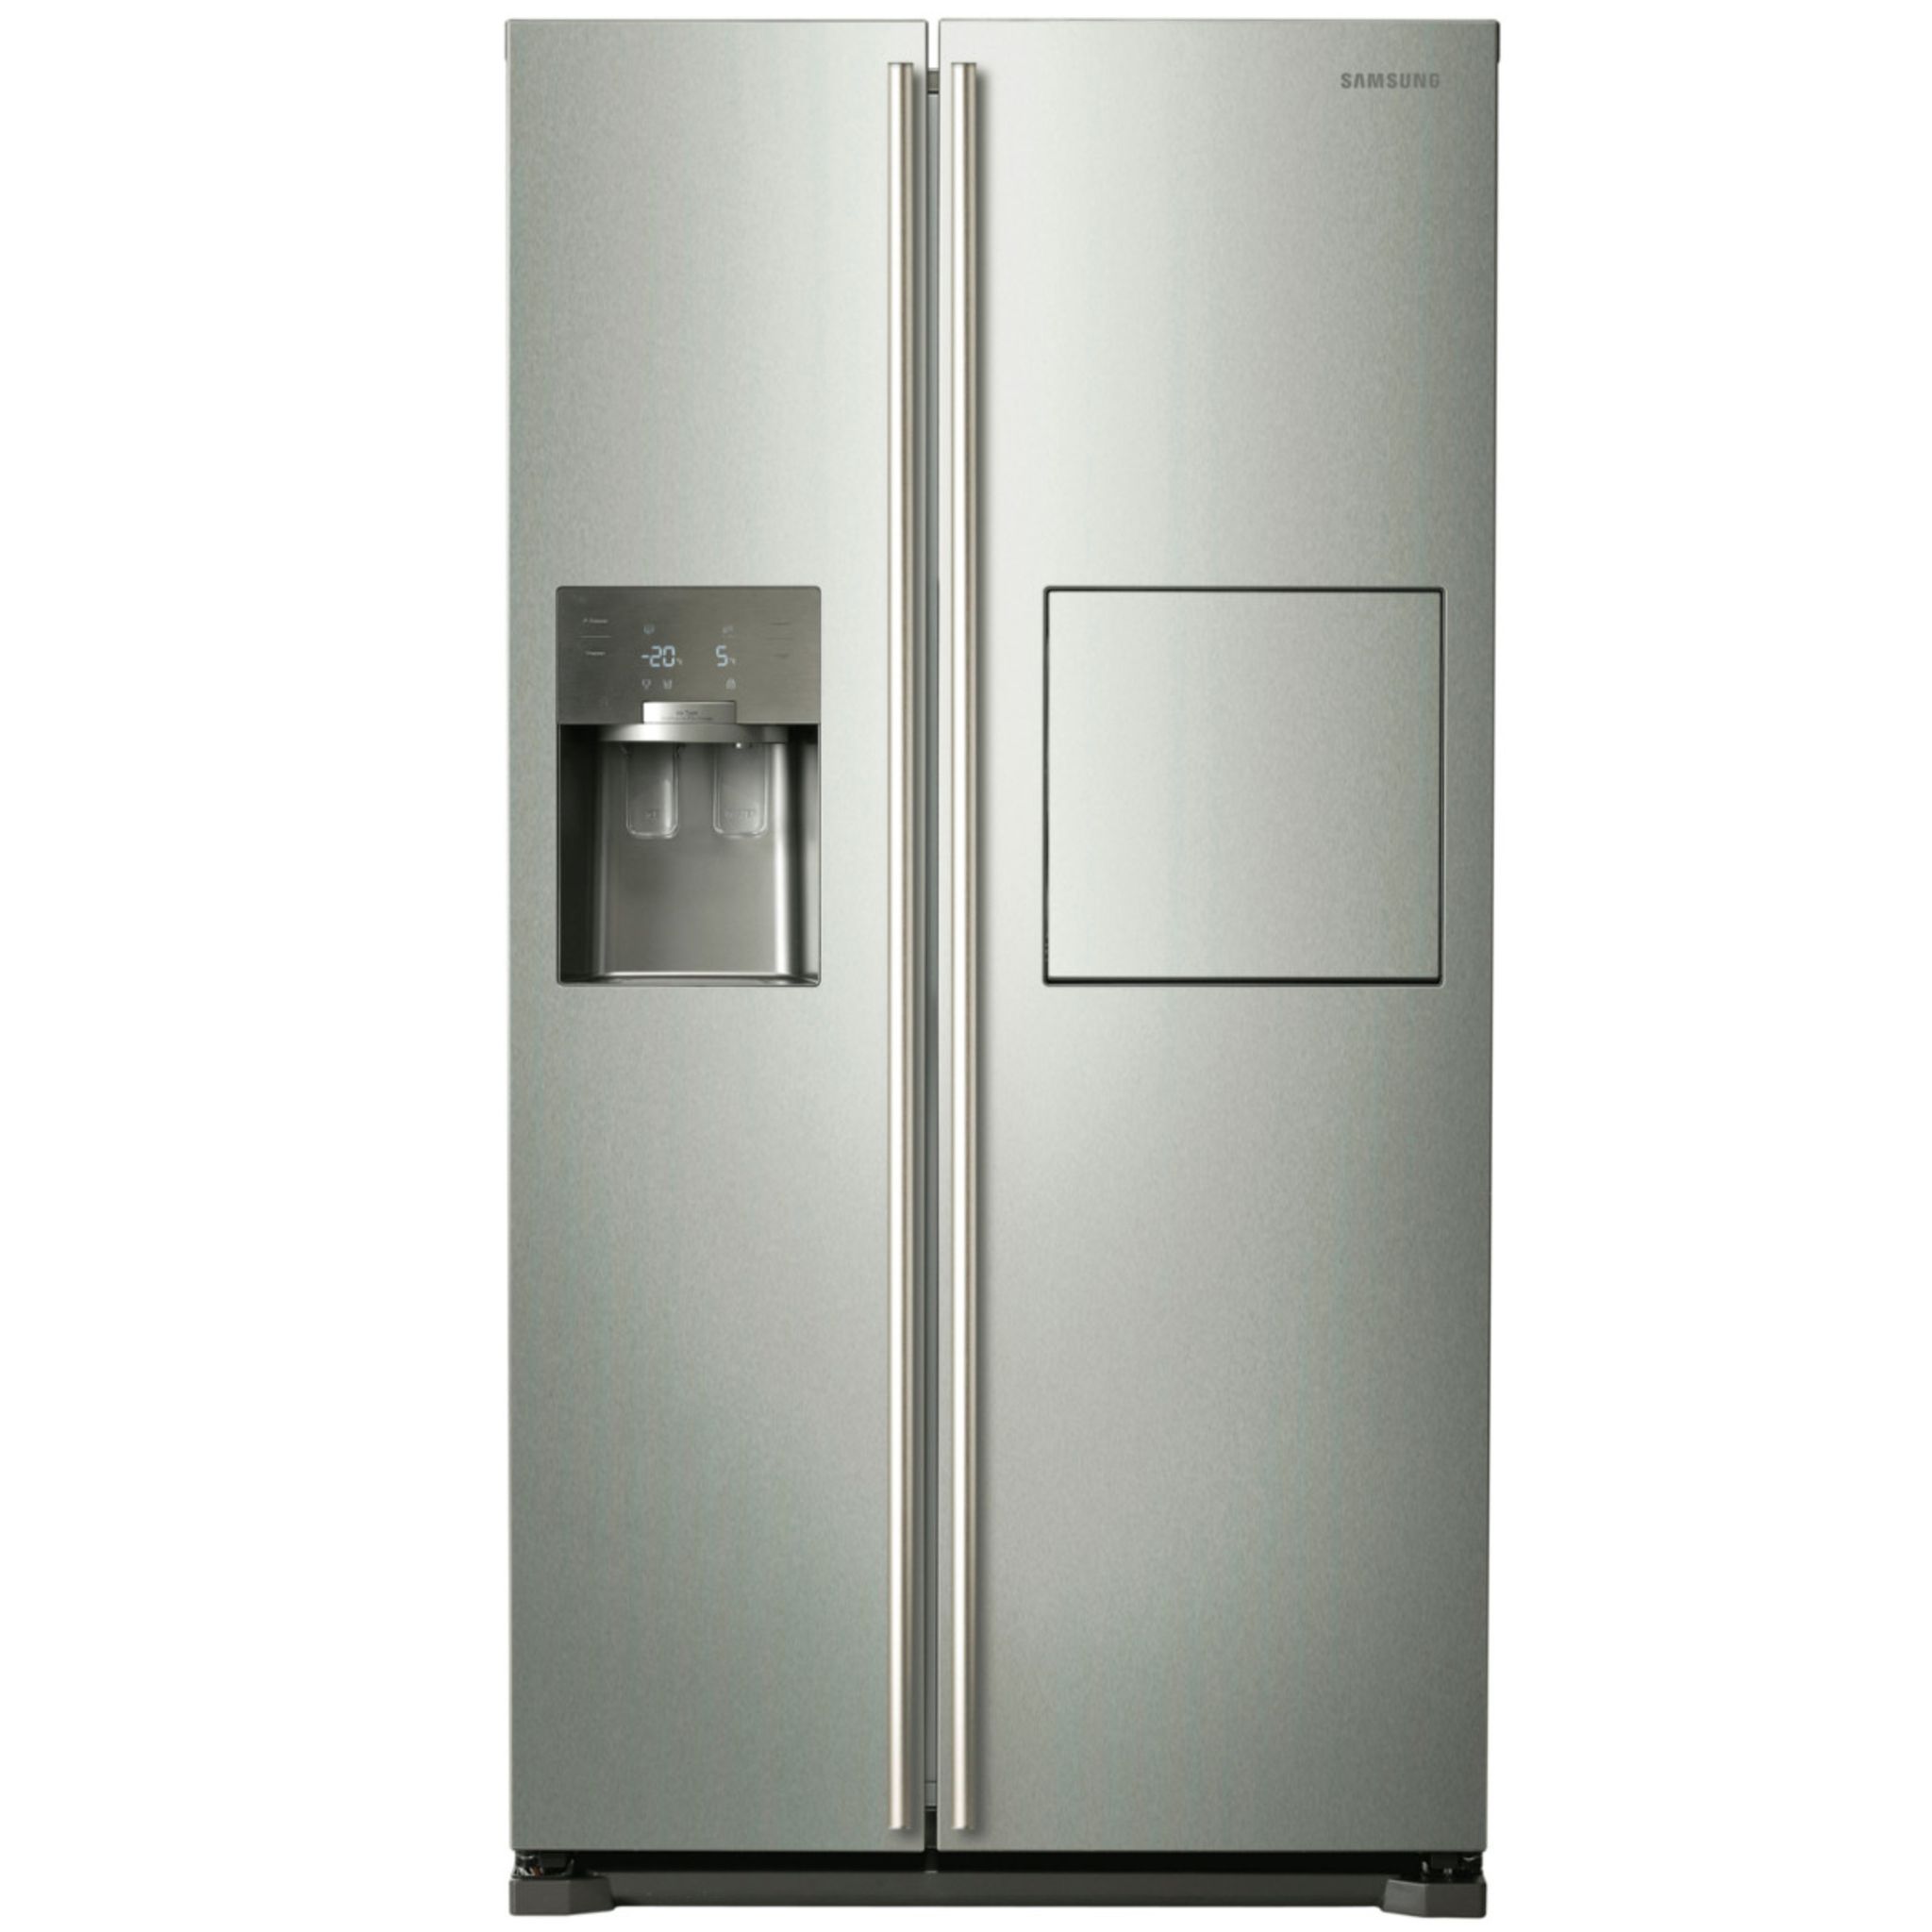 Refrigerateur americain sans raccordement eau - Achat / Vente Refrigerateur americain  sans raccordement eau pas cher - Réfrigérateur américain 